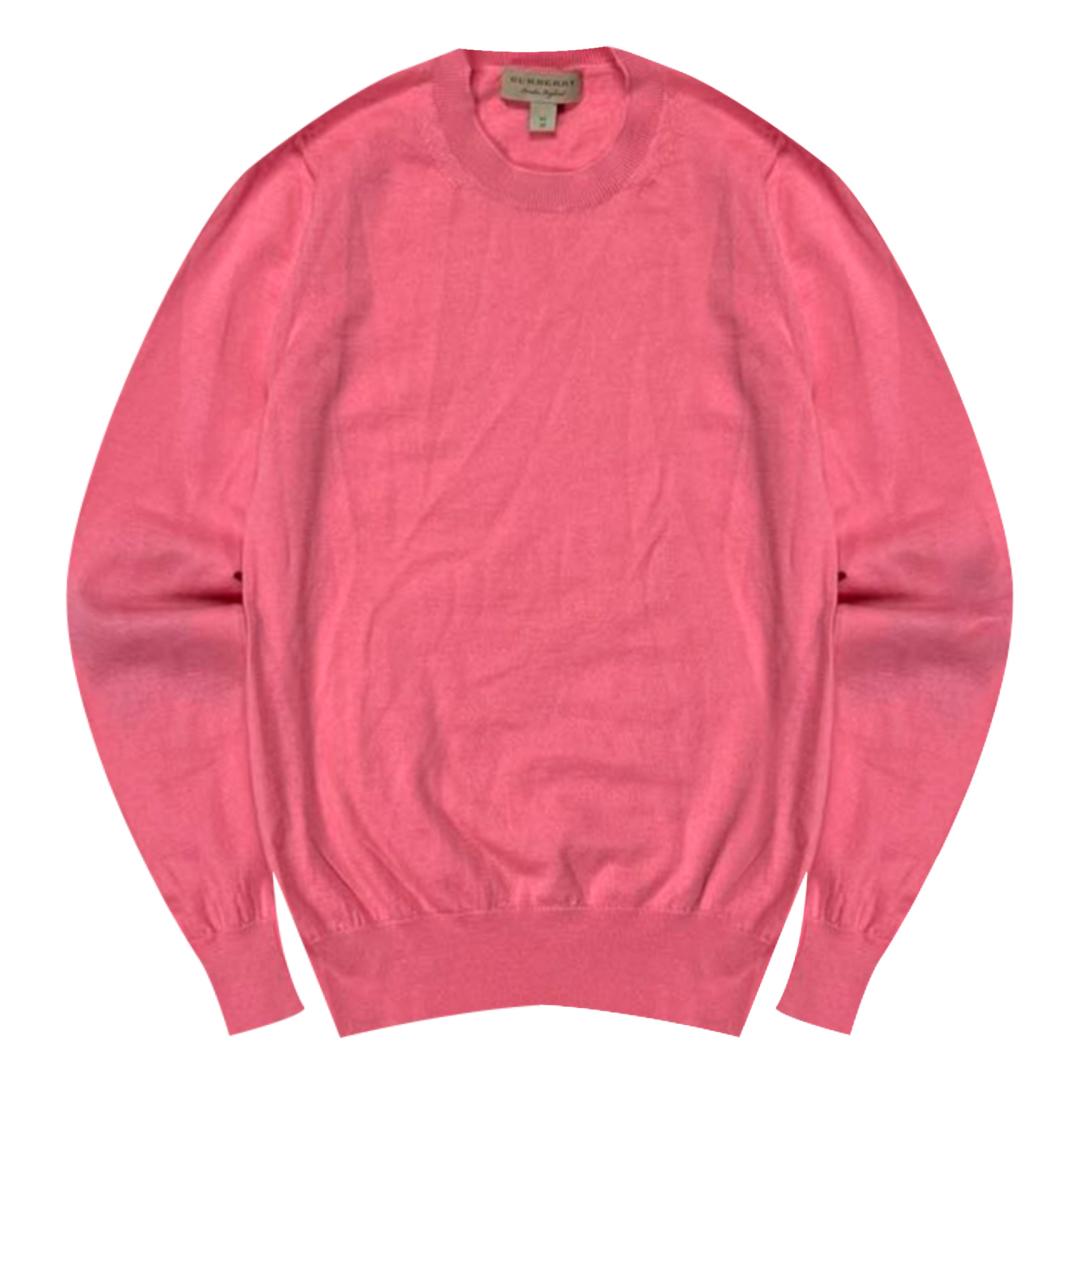 BURBERRY Розовый шерстяной джемпер / свитер, фото 1